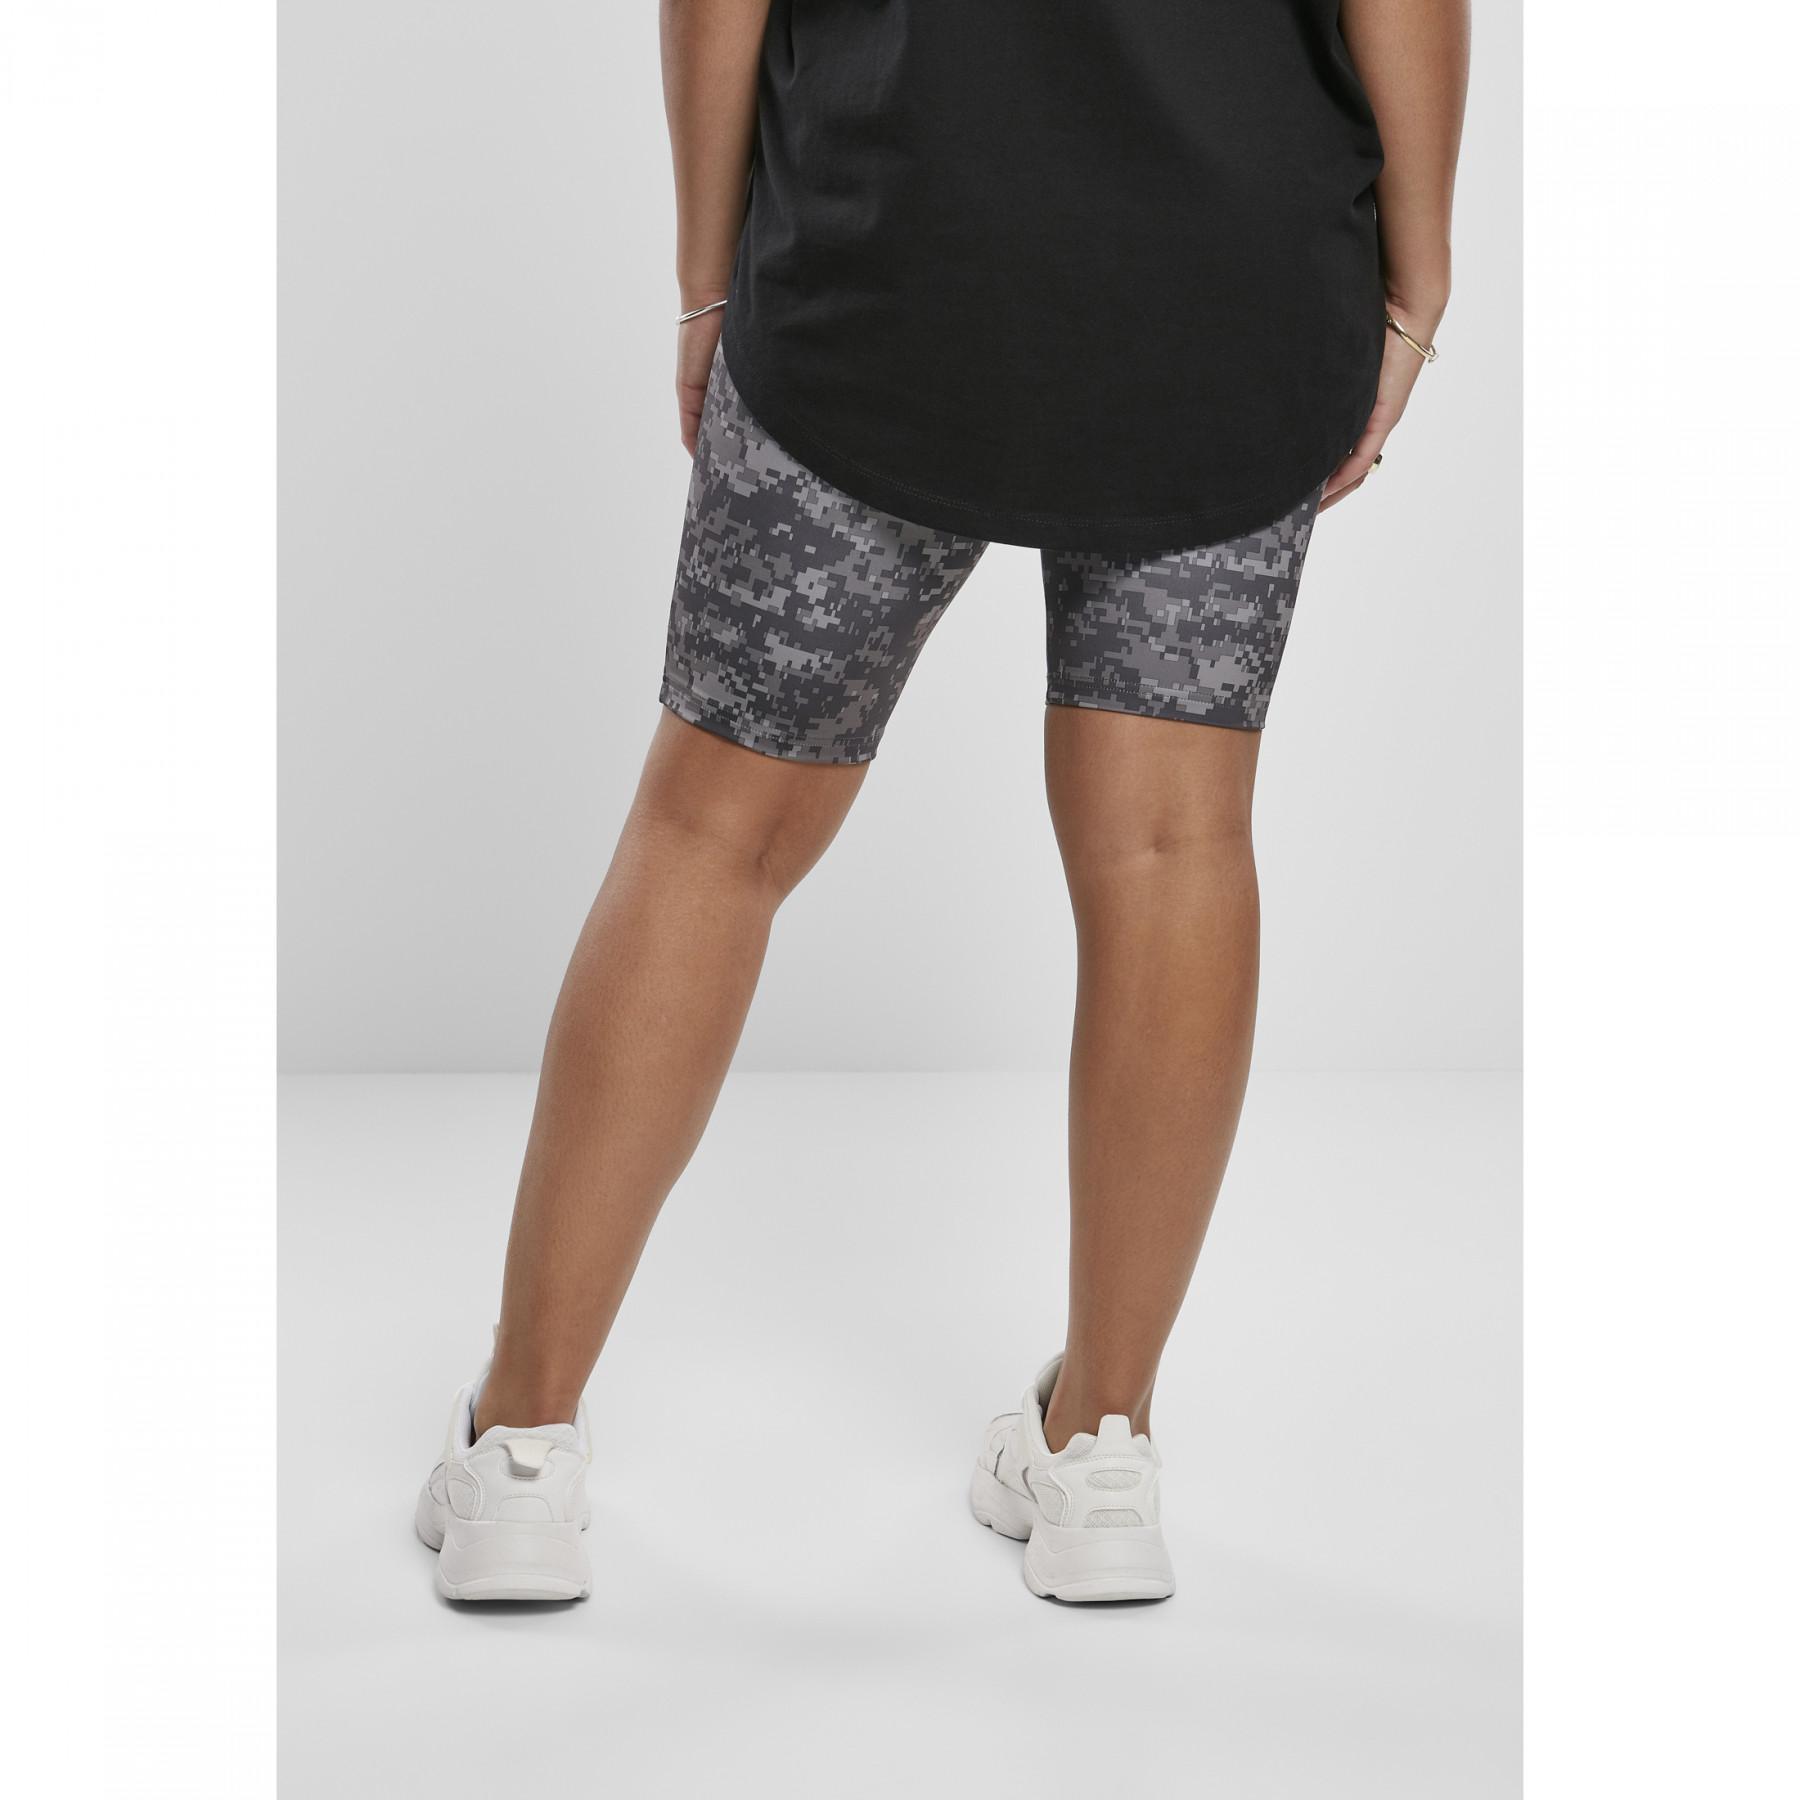 & Urban - Women - Skirts high Cycling shorts women camo - Shorts tech for waist Clothing Classics